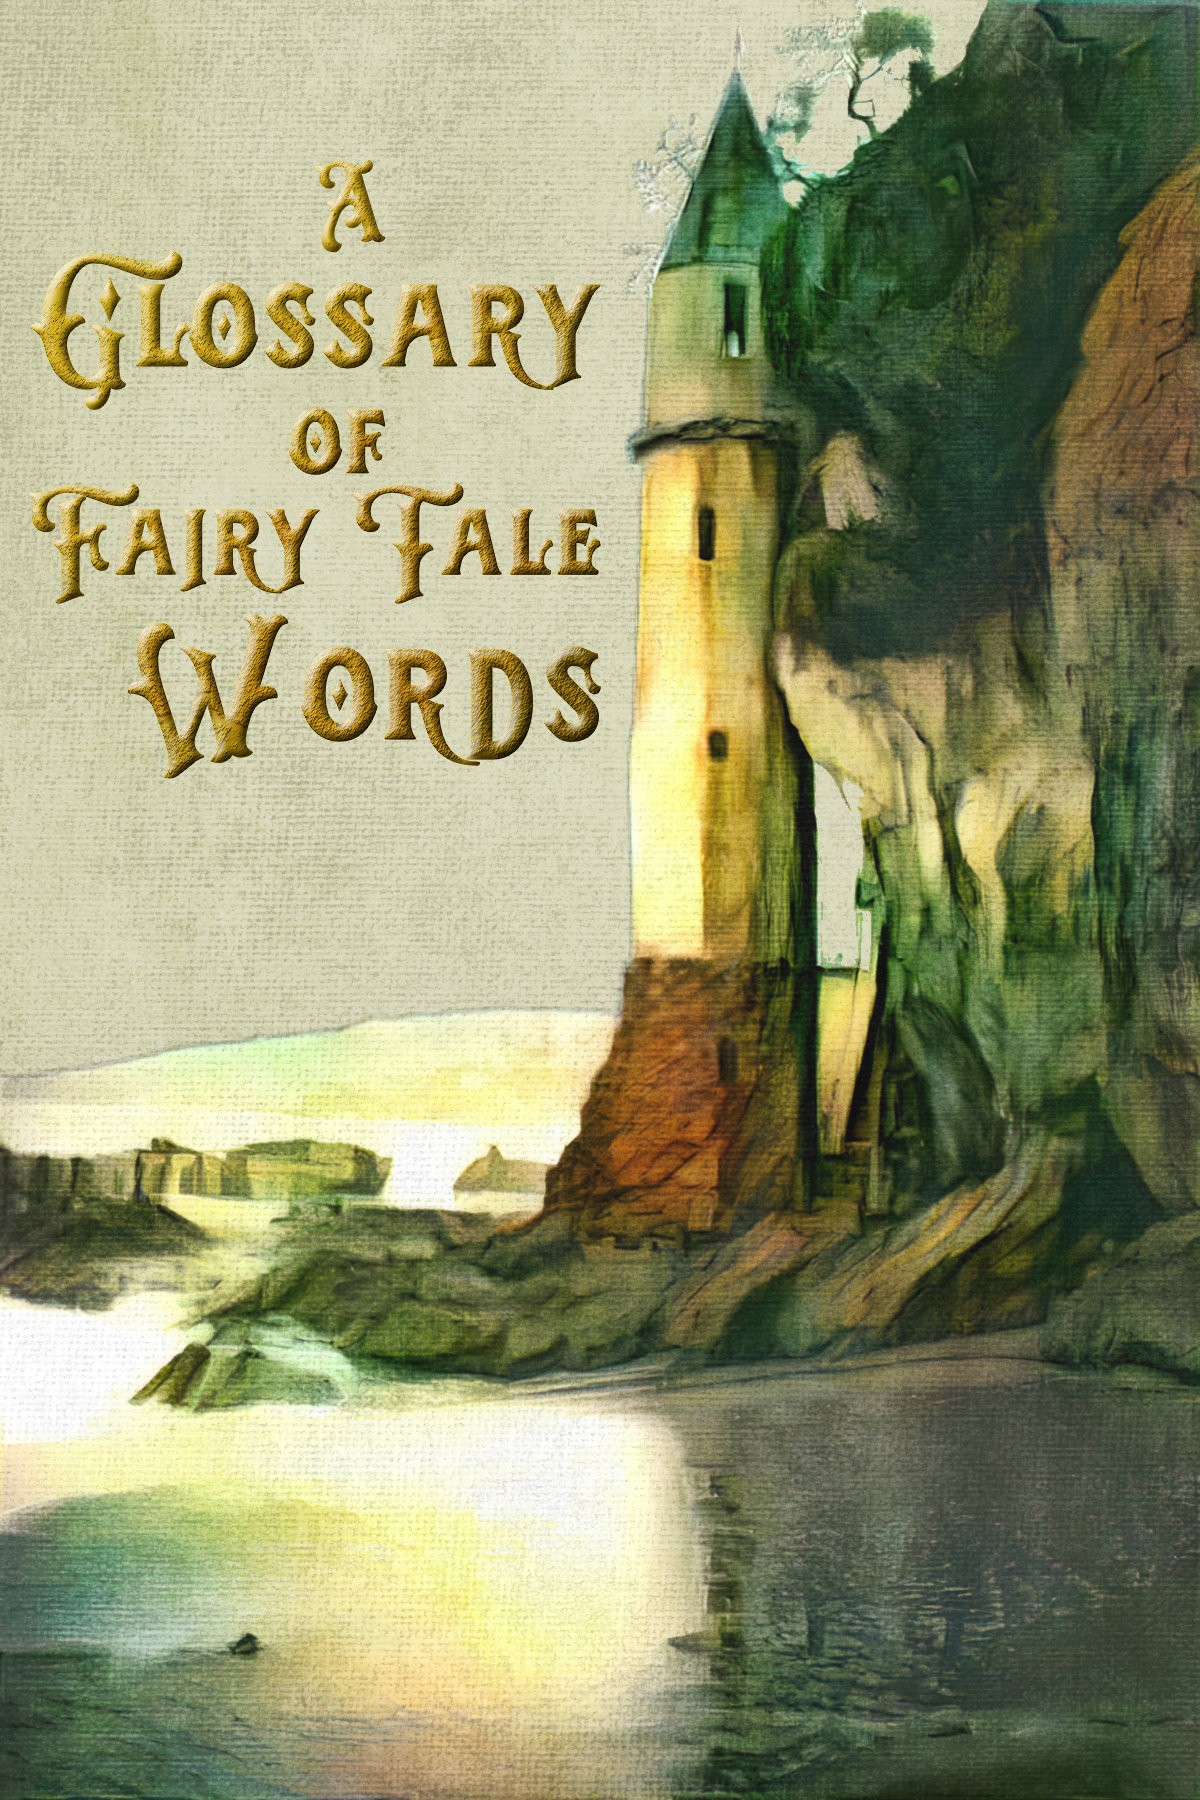 A Glossary of Fairytale Words